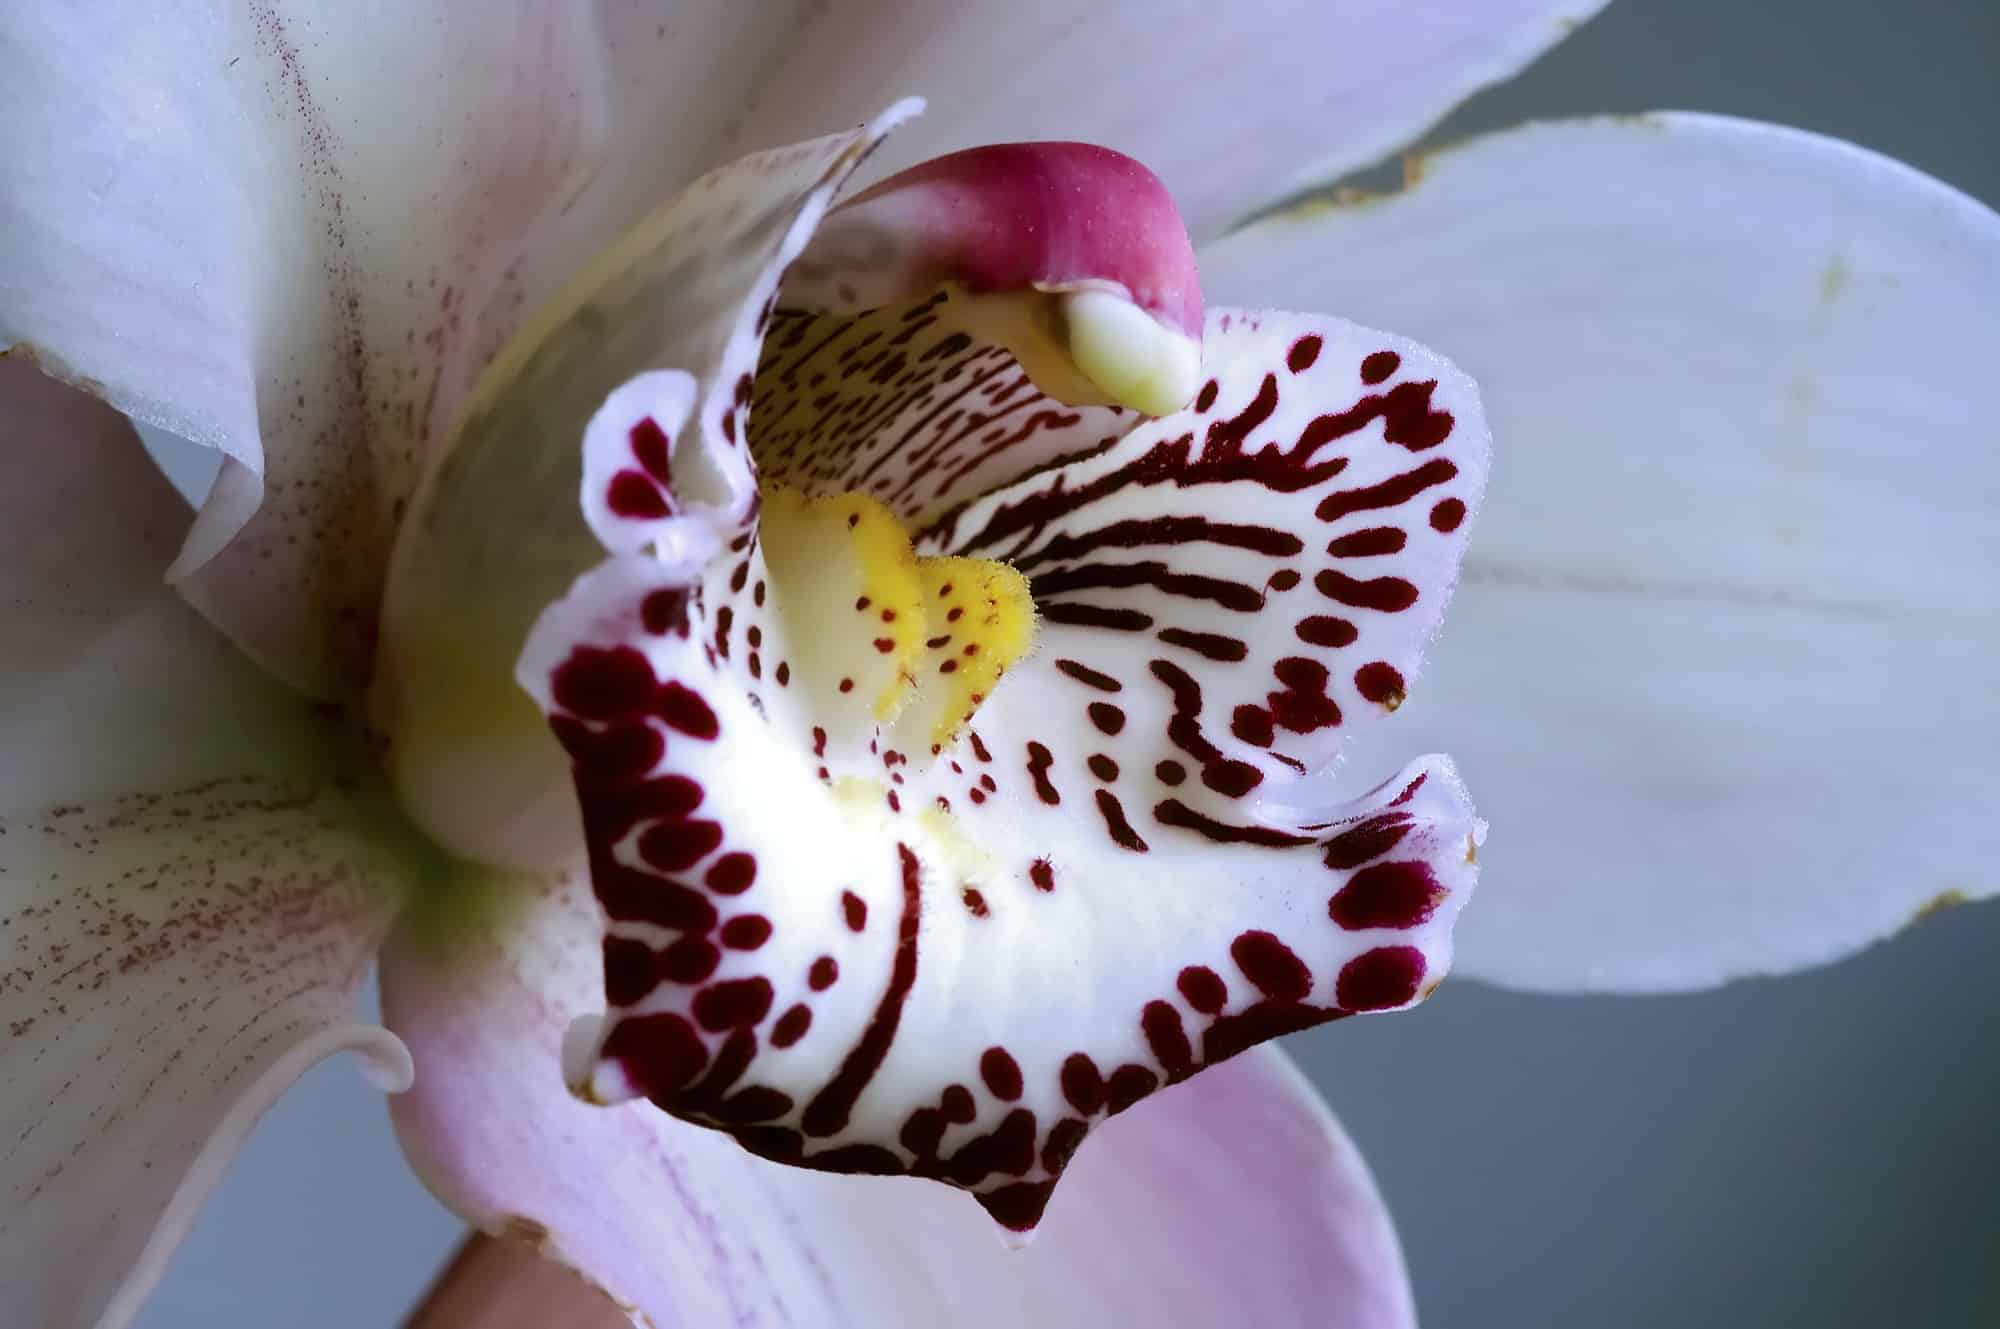 Comment savoir si une orchidée est morte